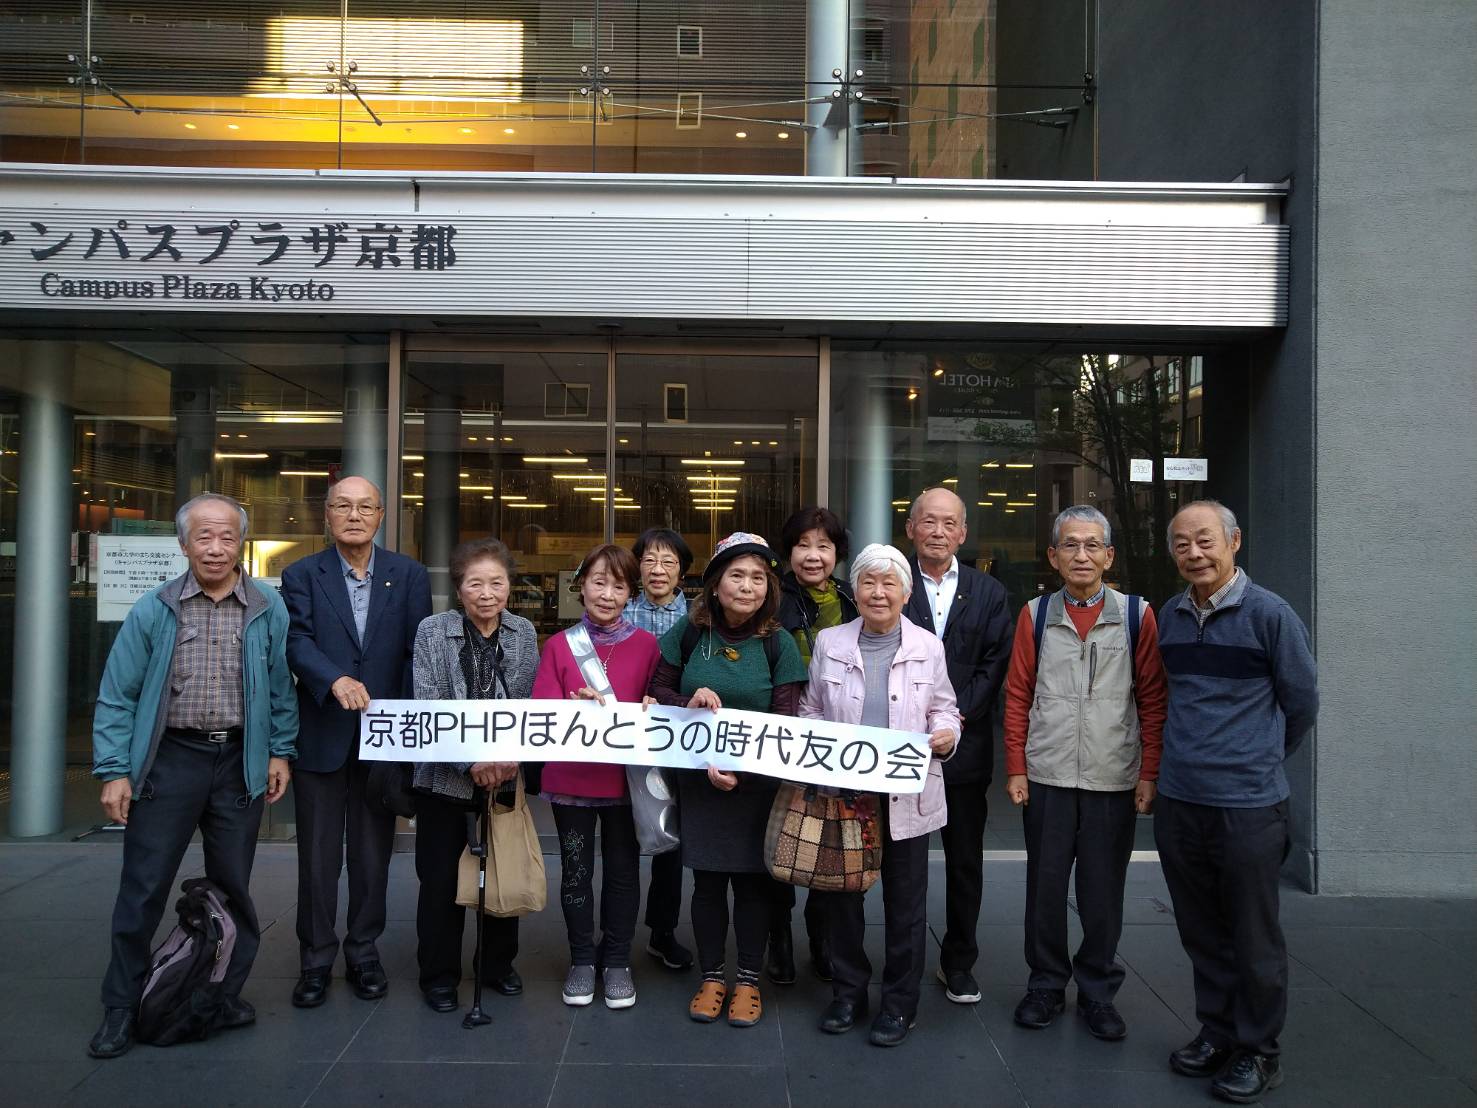 京都PHPほんとうの時代友の会　10月度例会を開催しました。　　　　　　　　　　　　　